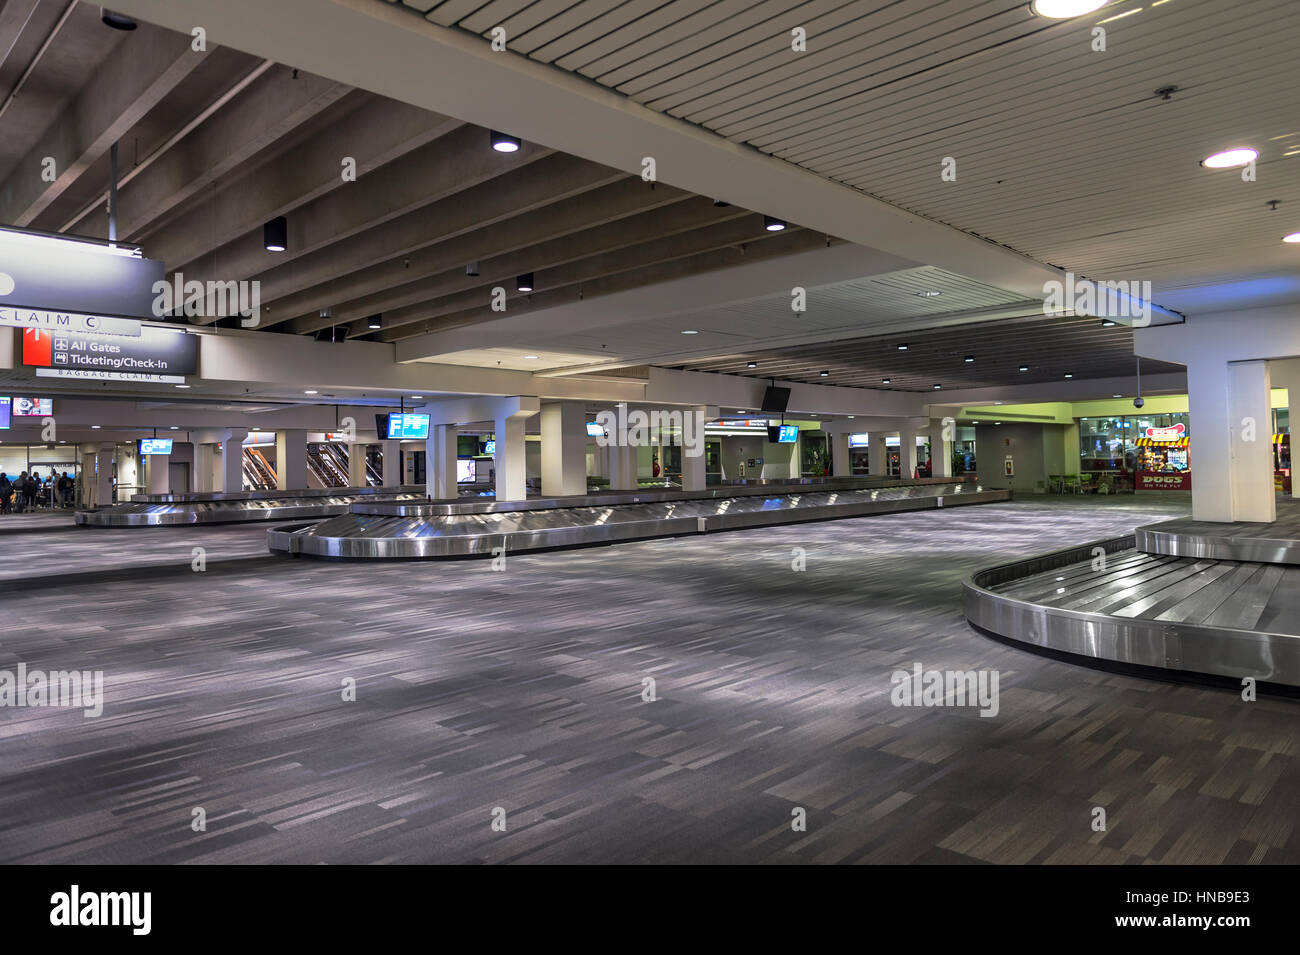 Espace à bagages vide de l'aéroport, Philadelphie Pennsylvanie États-Unis Banque D'Images